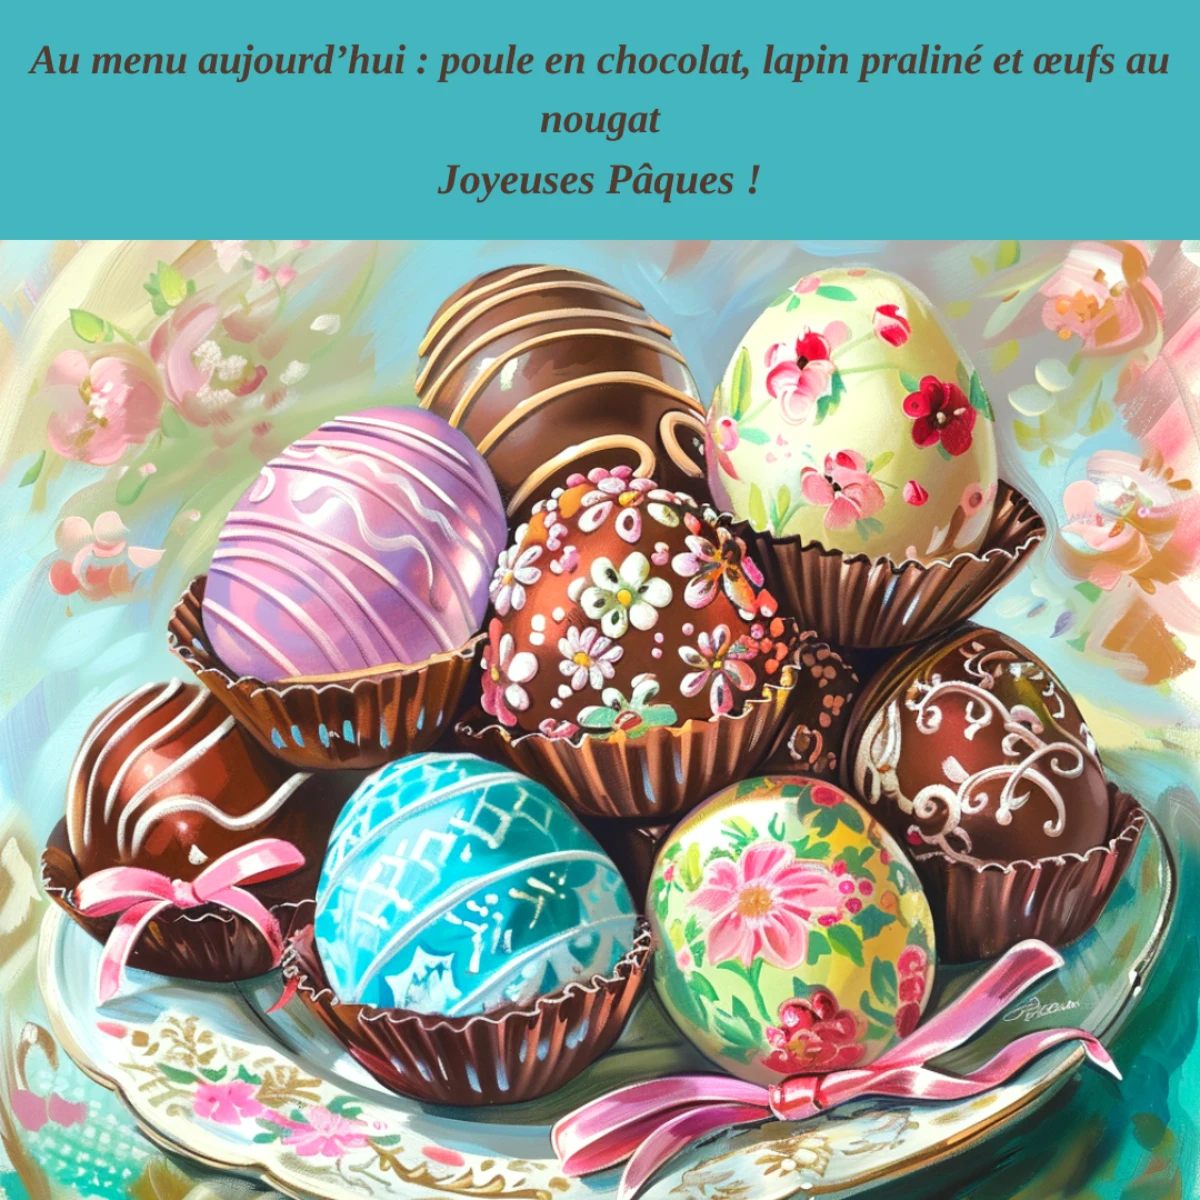 joyeuses paques images gratute a telecharger oeufs en chocolat citation